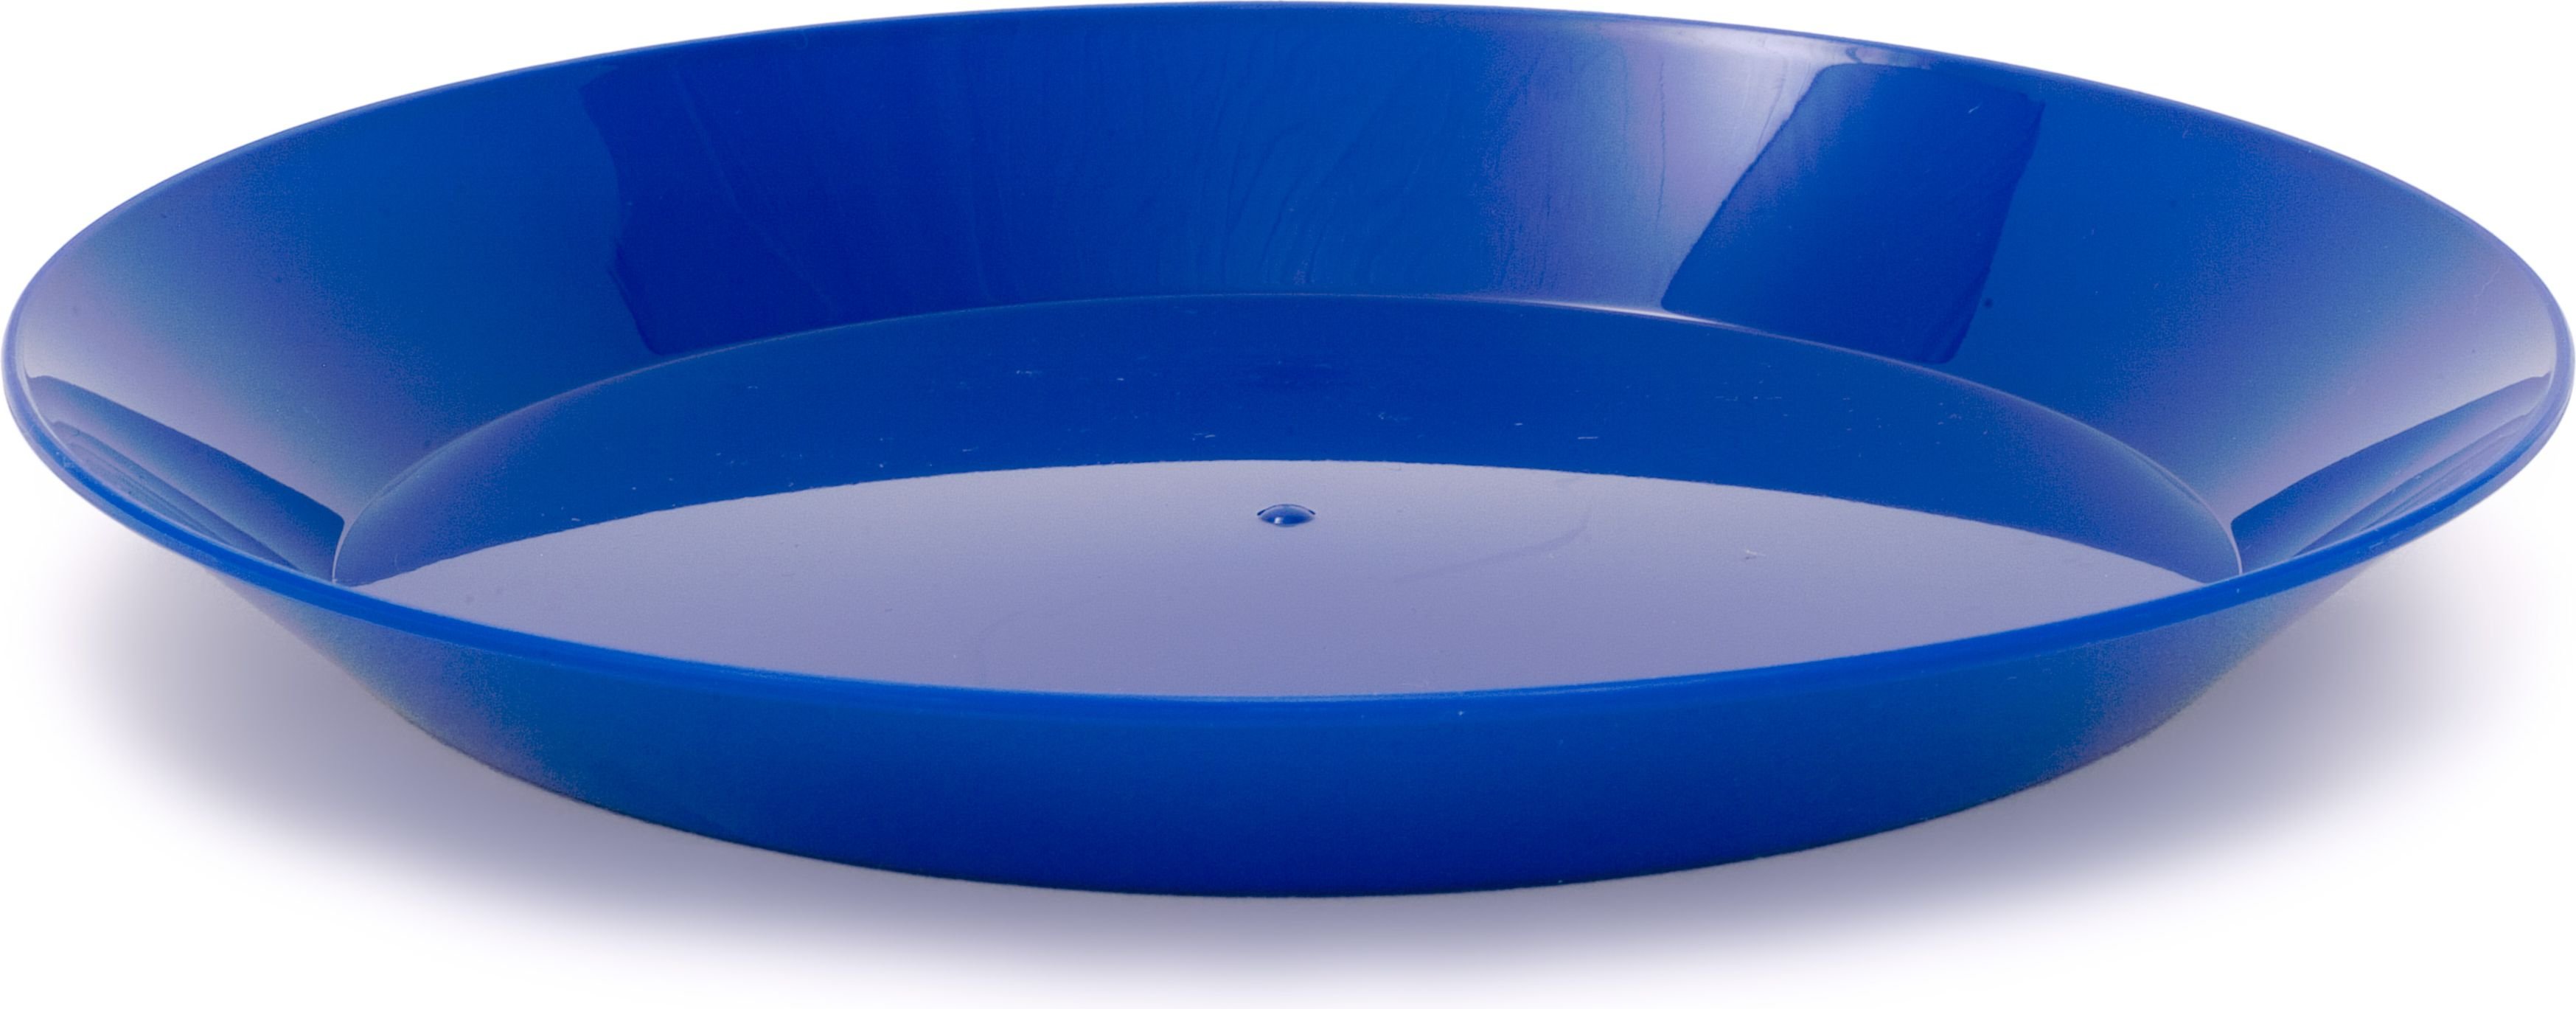 GSI Outdoors Cascadian Plate Blue (77262)